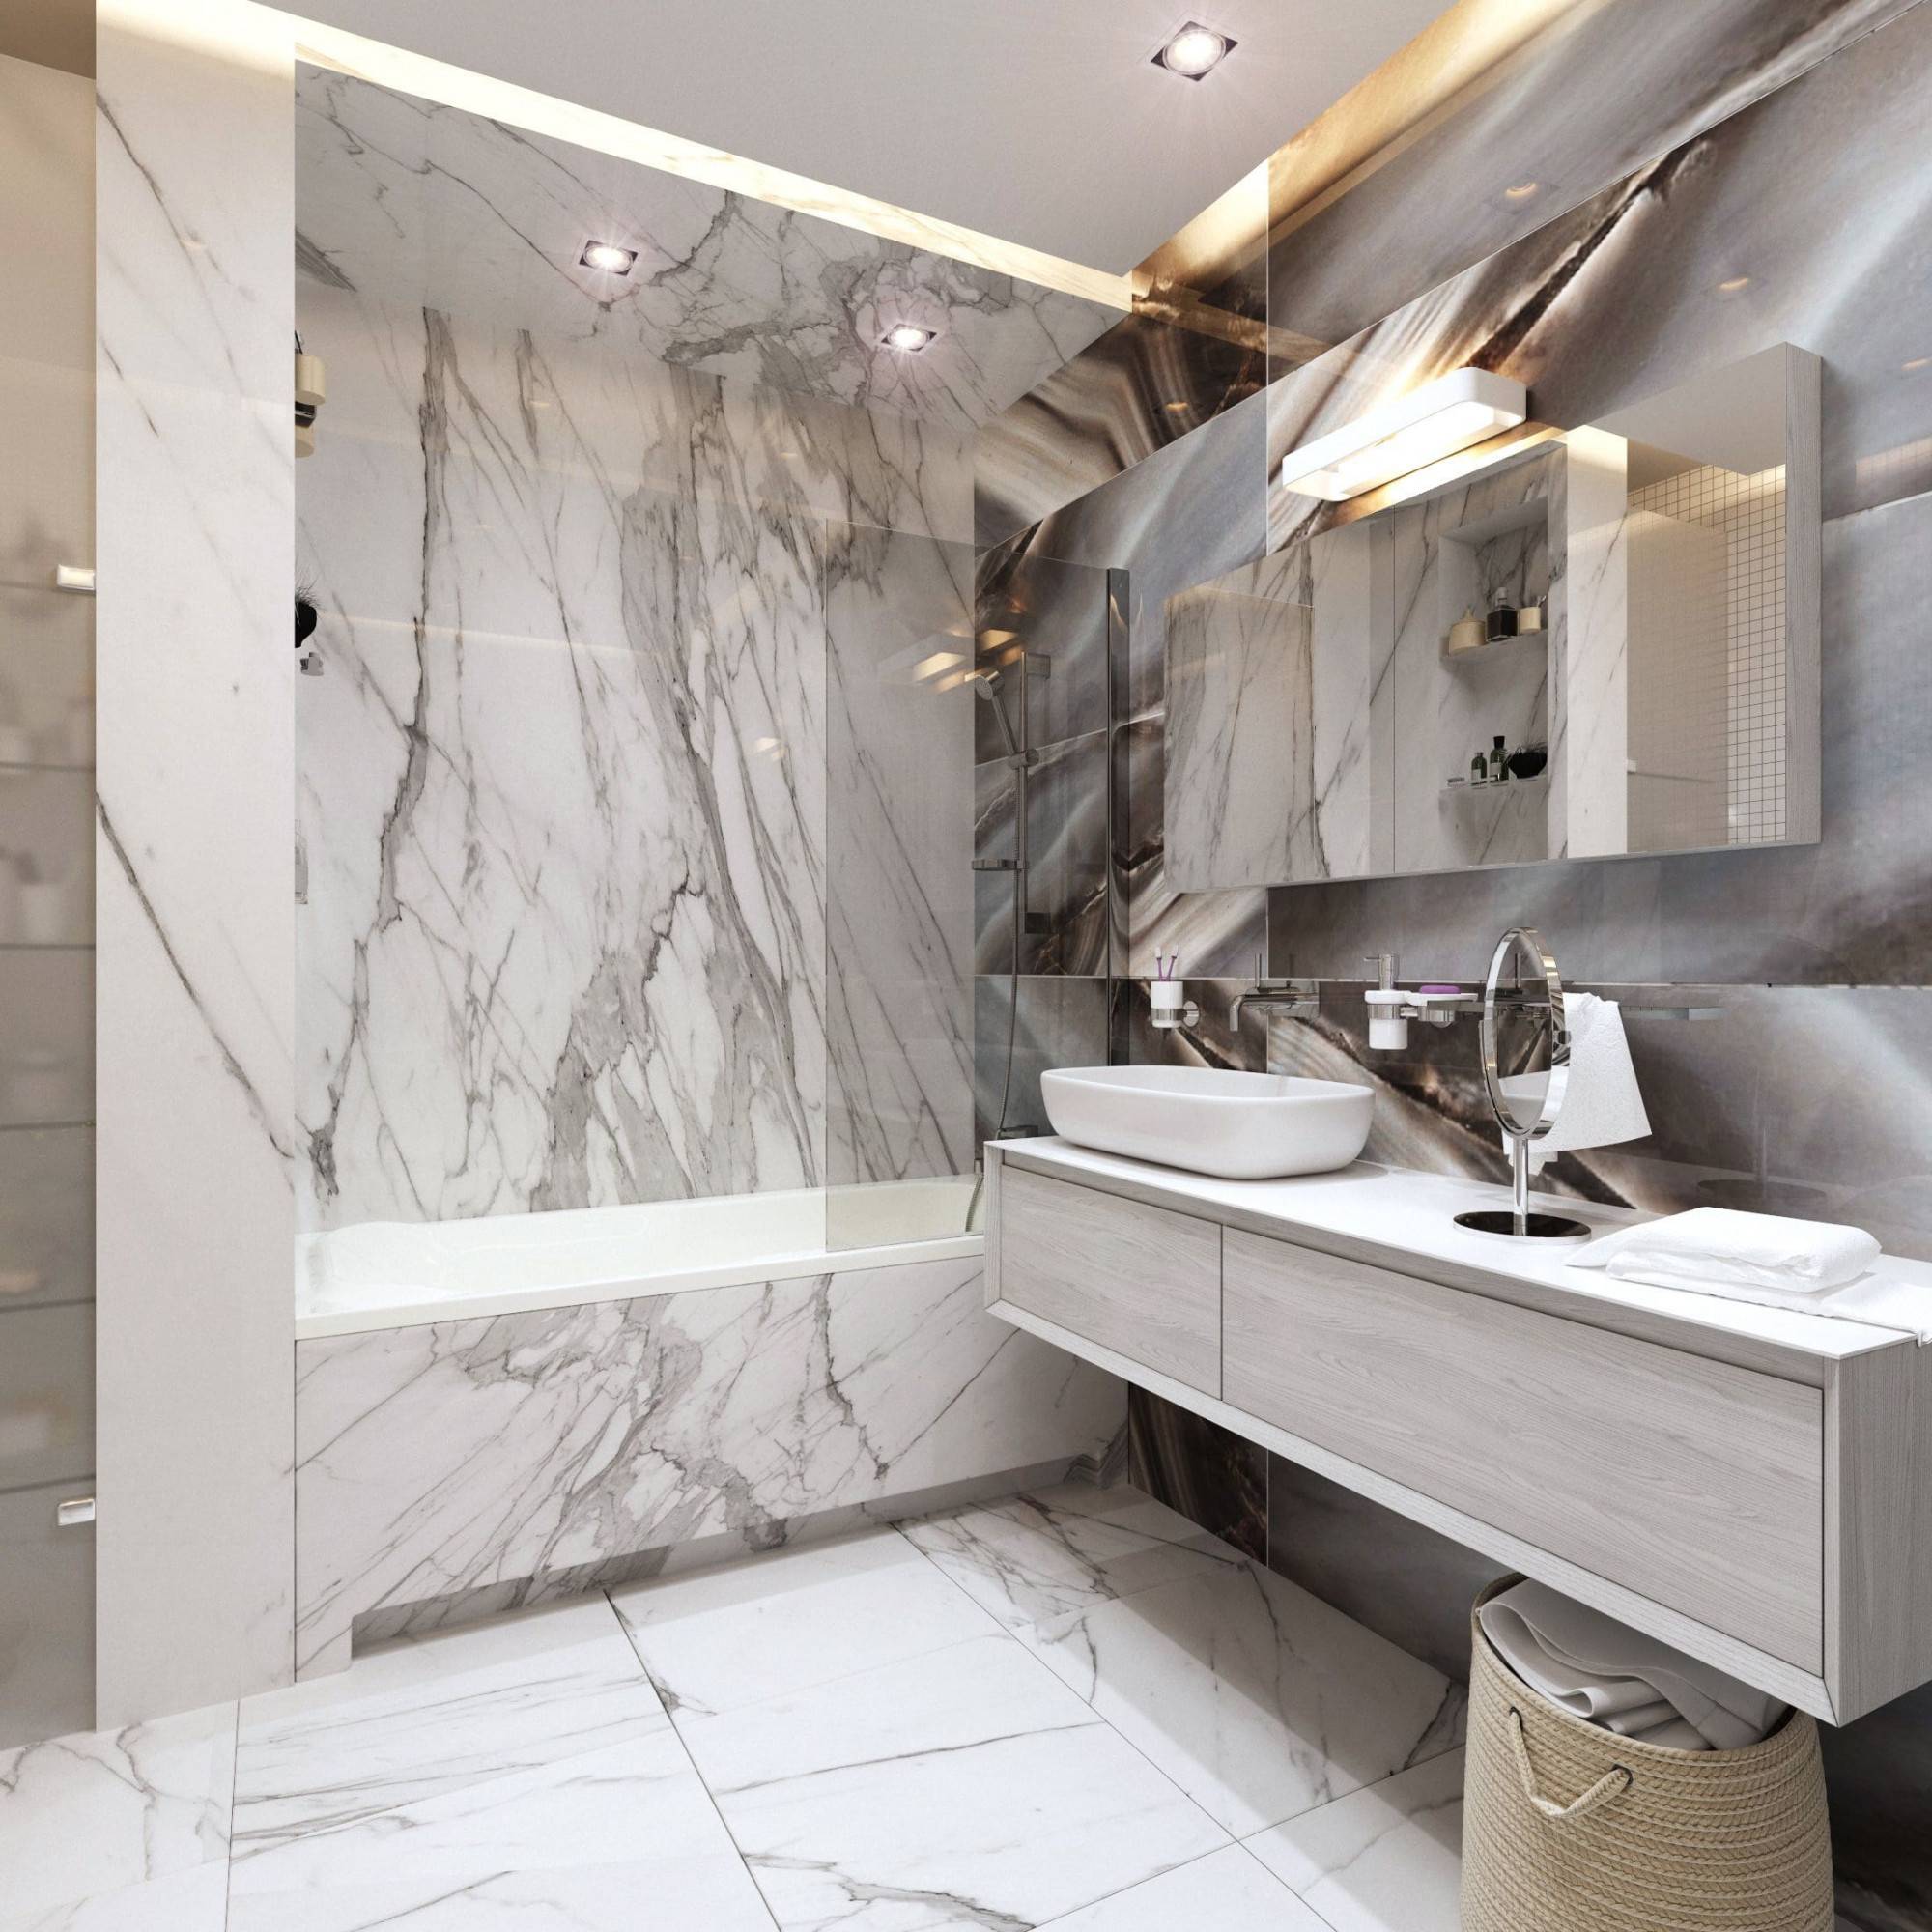 Ванная в мраморной плитке: 80 лучших фото-идей дизайна интерьера ванной - дизайн для дома